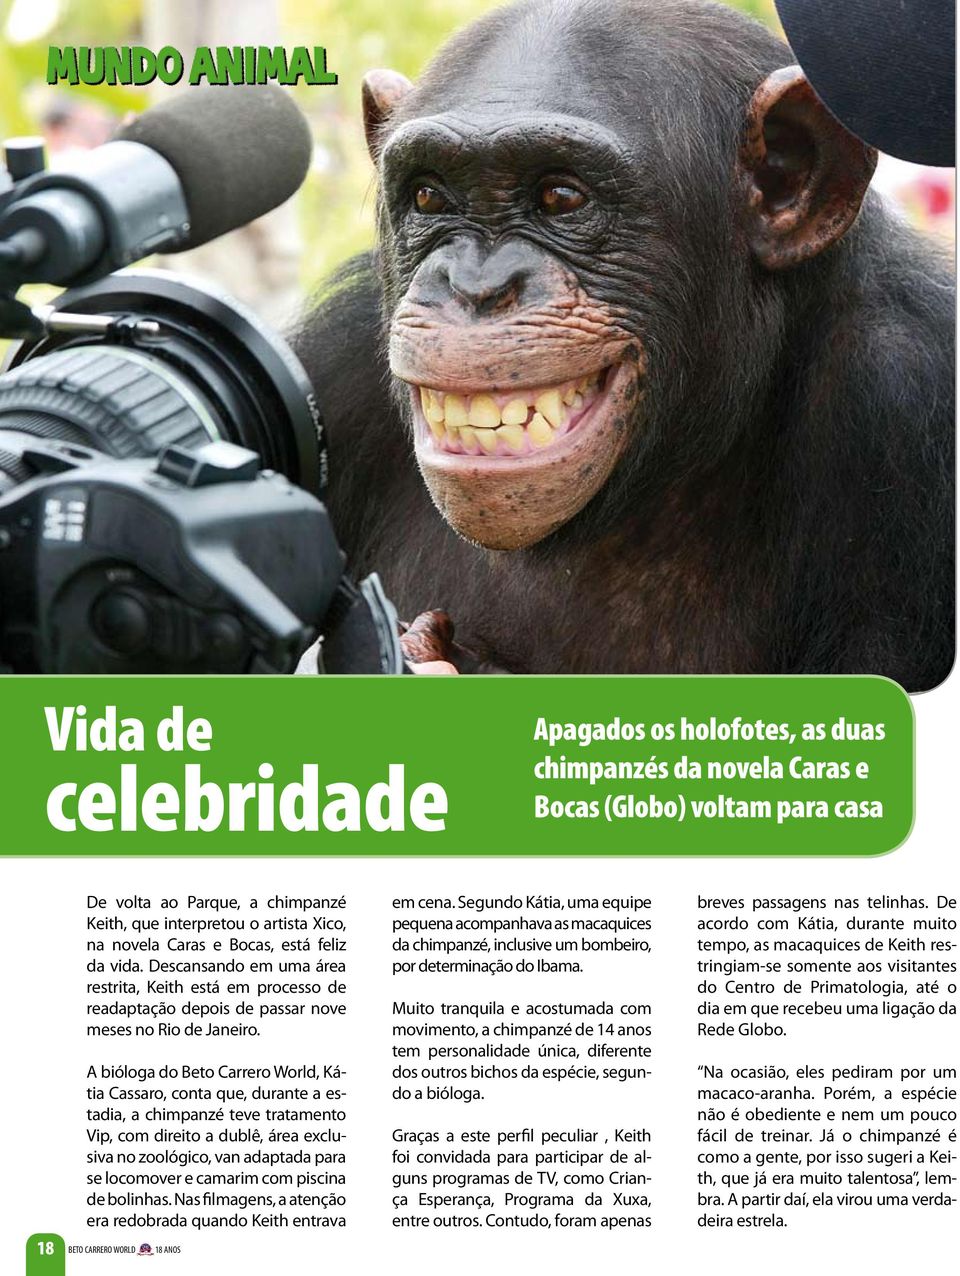 A bióloga do Beto Carrero World, Kátia Cassaro, conta que, durante a estadia, a chimpanzé teve tratamento Vip, com direito a dublê, área exclusiva no zoológico, van adaptada para se locomover e